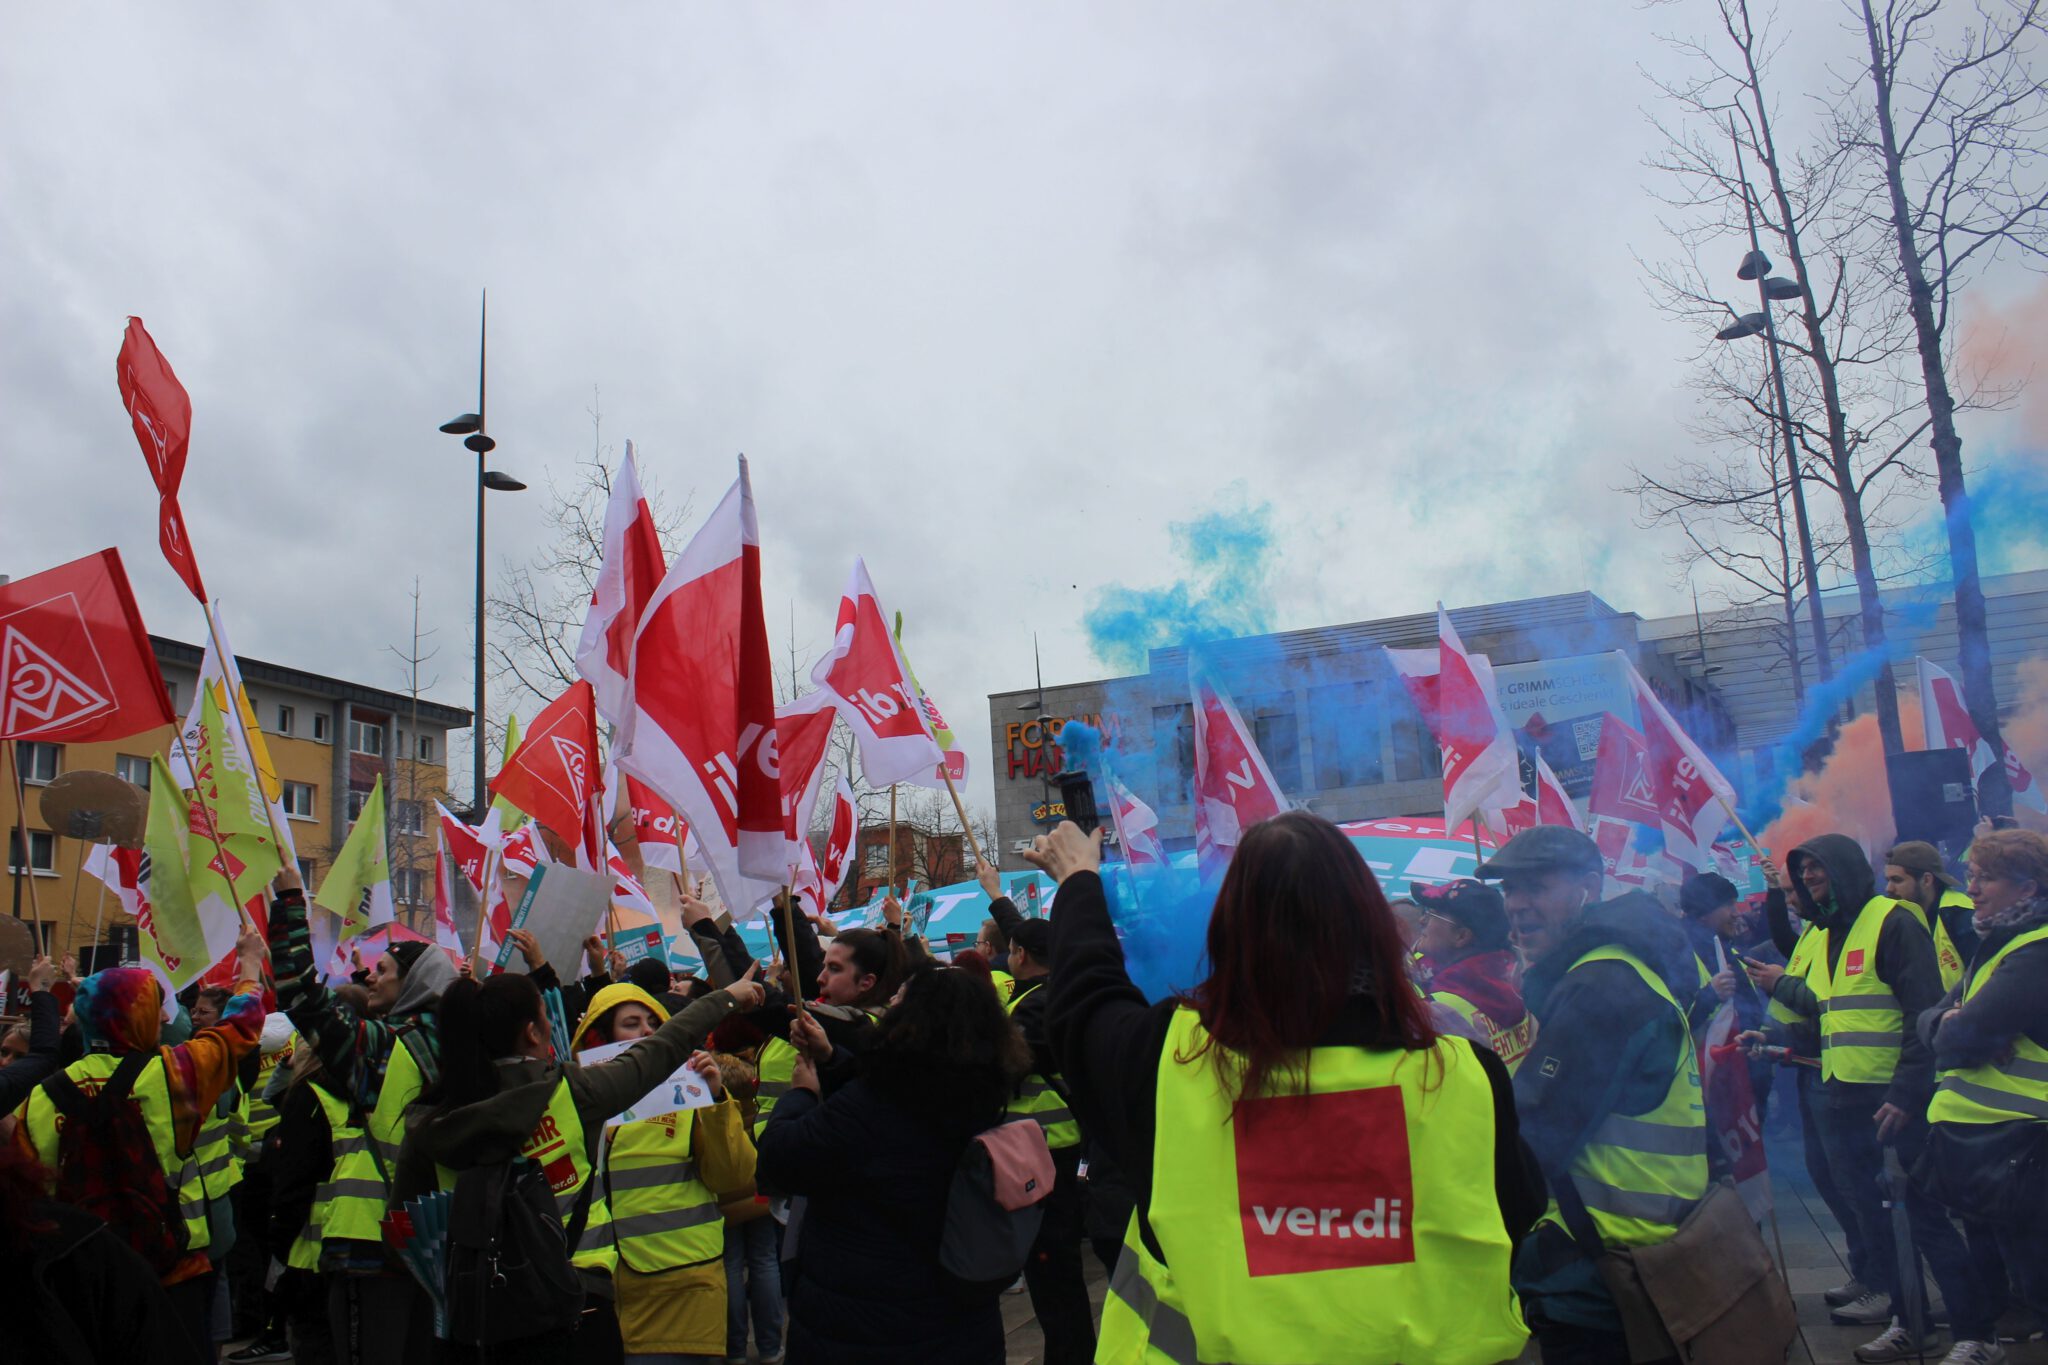 Berliner Justiz zementiert völkerechtswidrige Auslegung des Streikrechts!